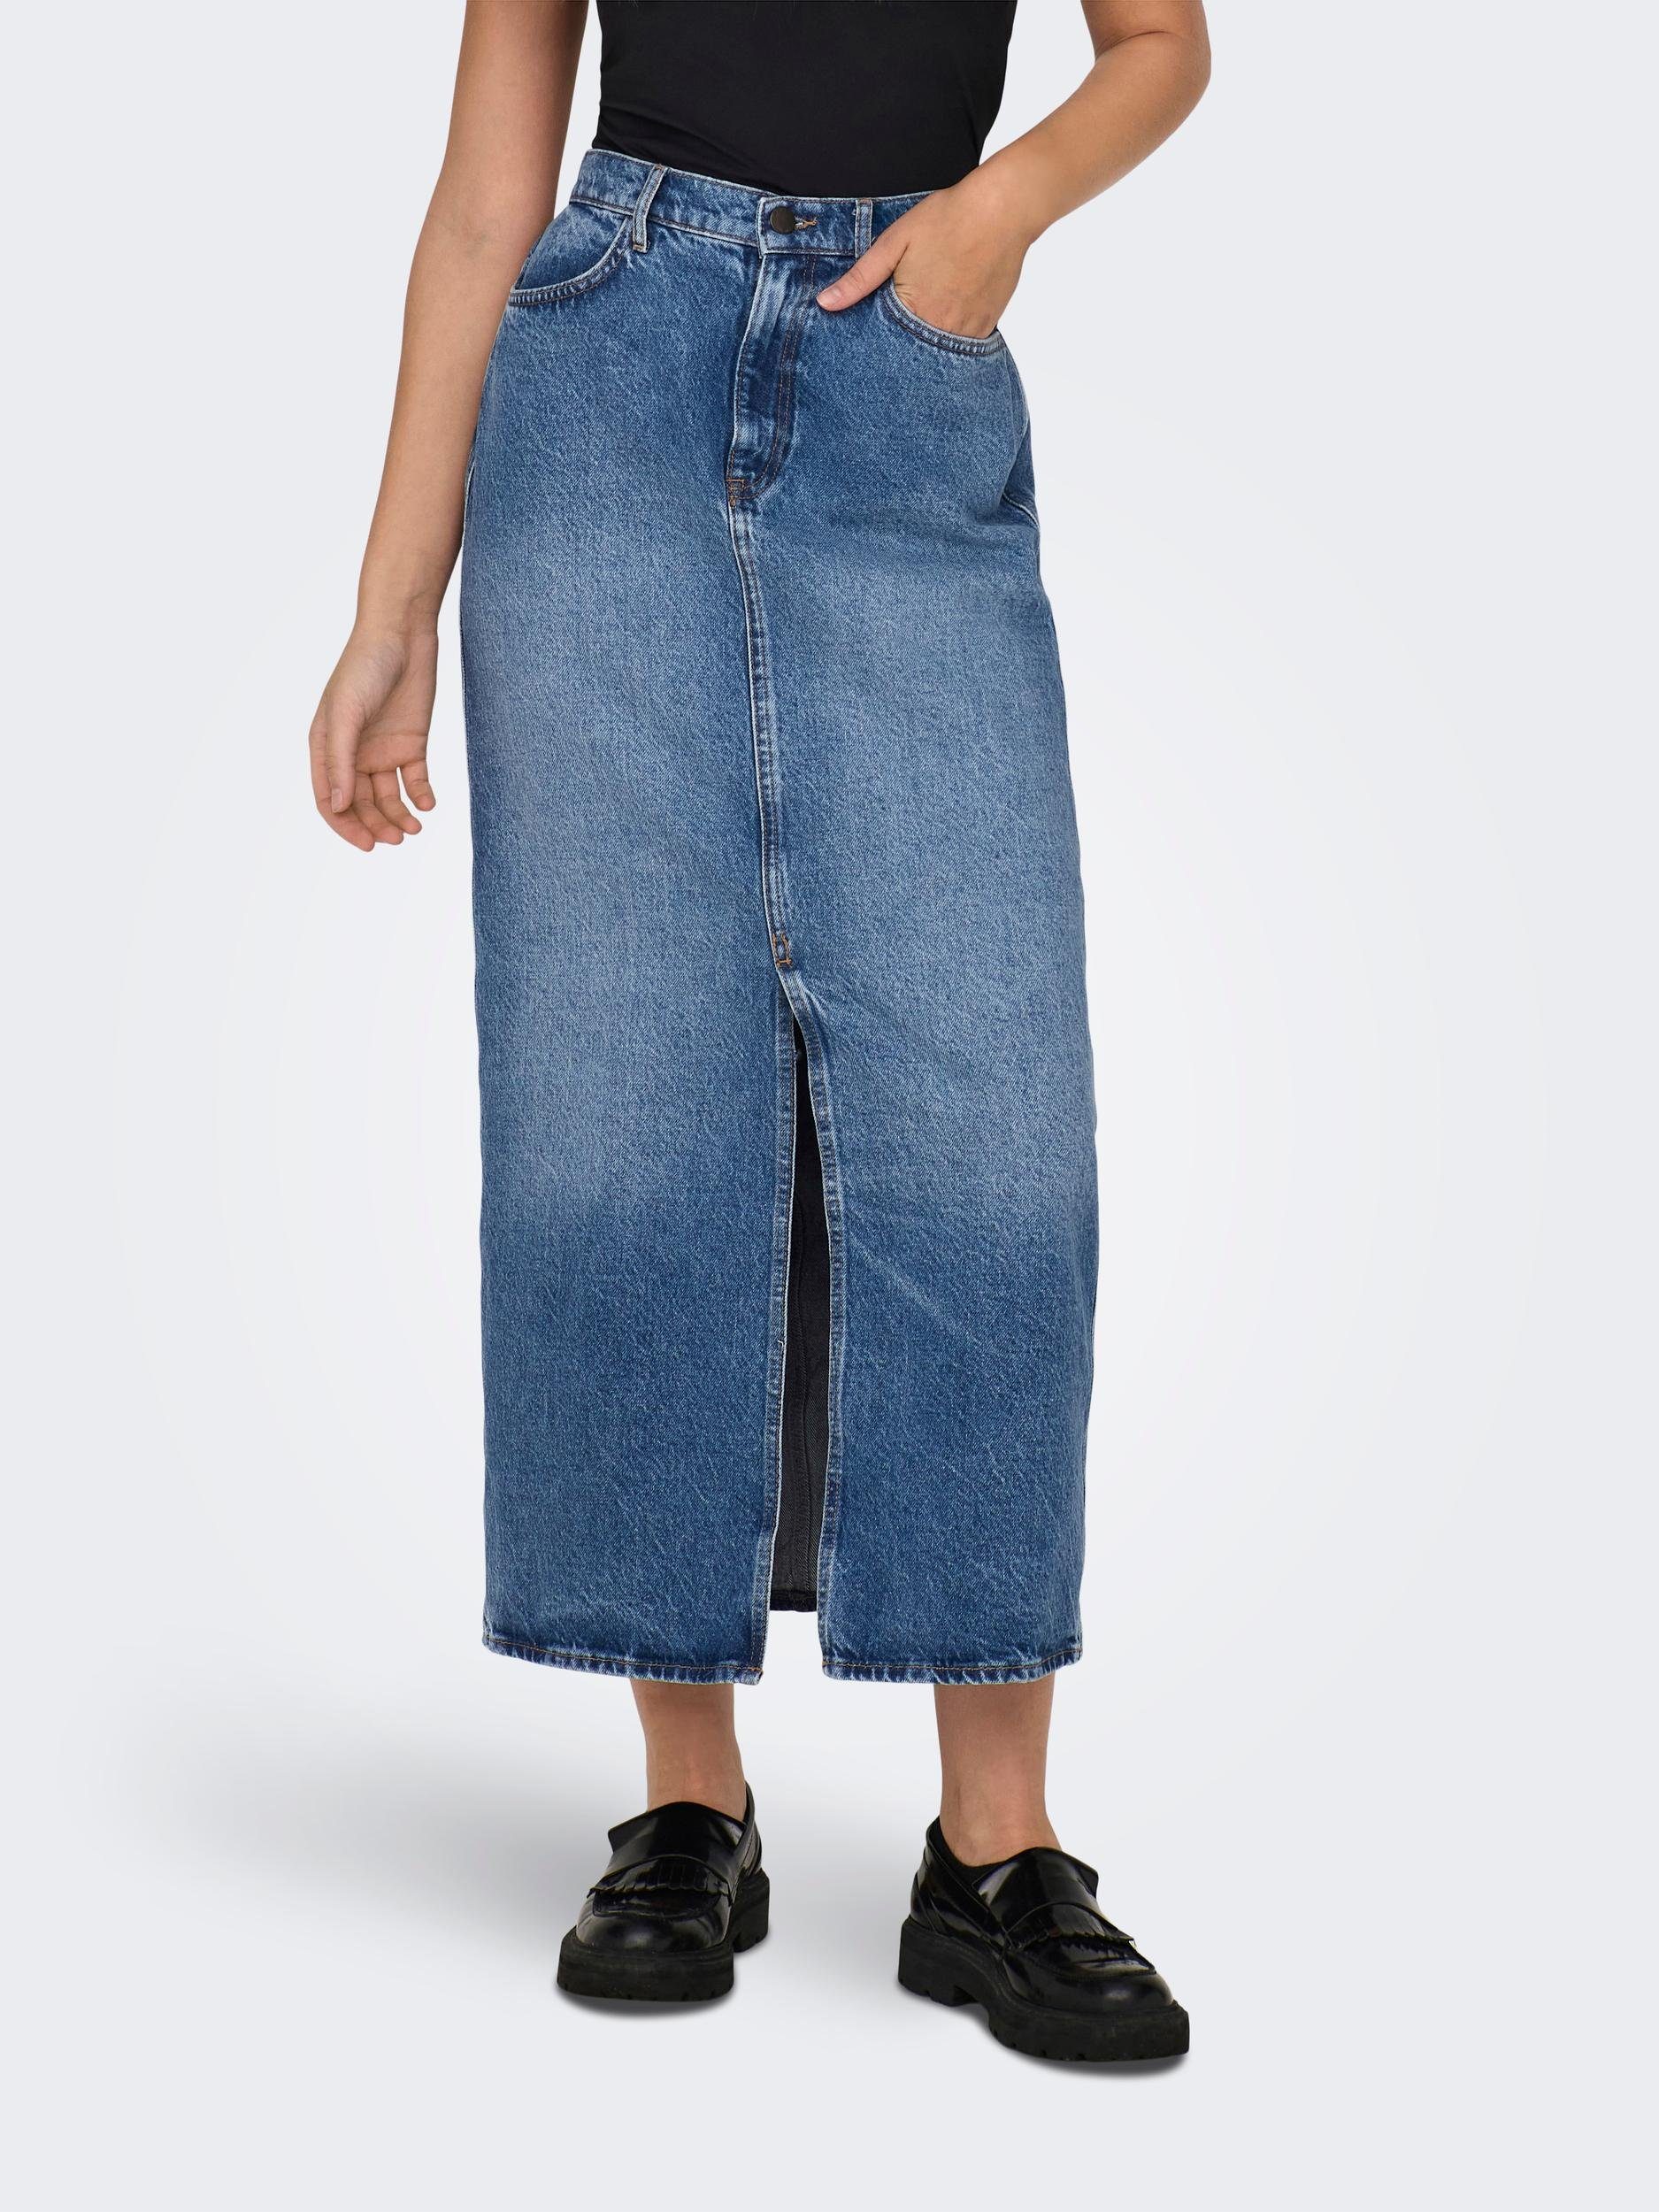 One für OTTO | Street Jeansröcke Damen online kaufen